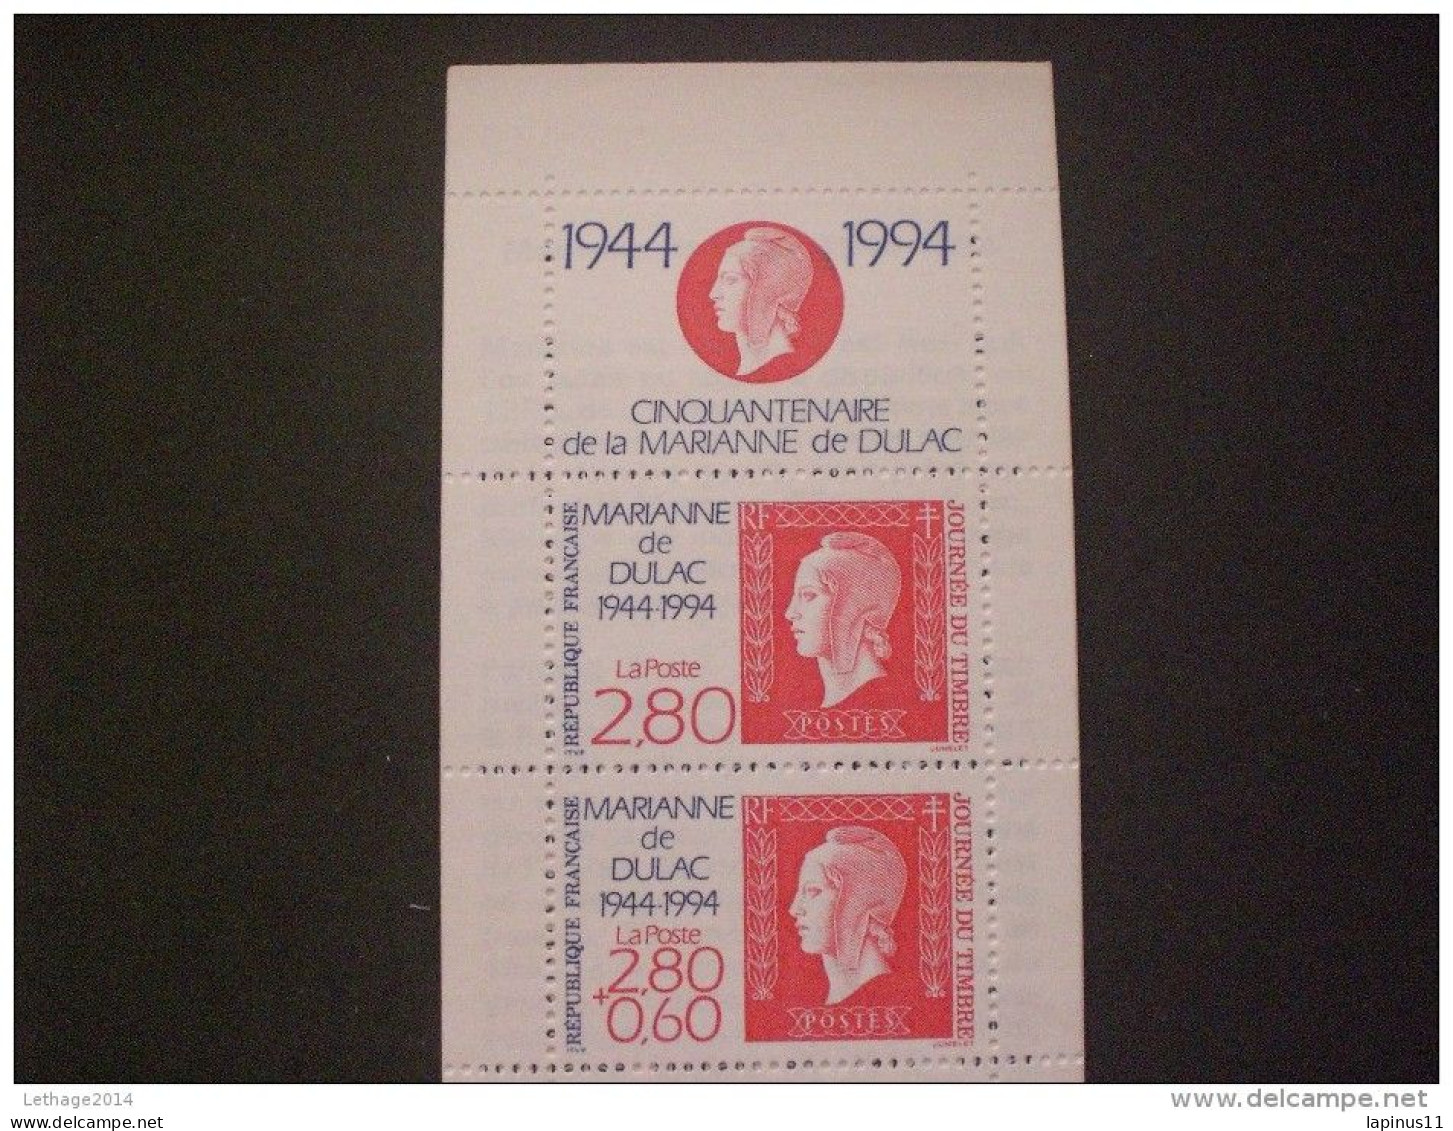 STAMPS FRANCE CARNETS 1994 Stamp Day - Tag Der Briefmarke